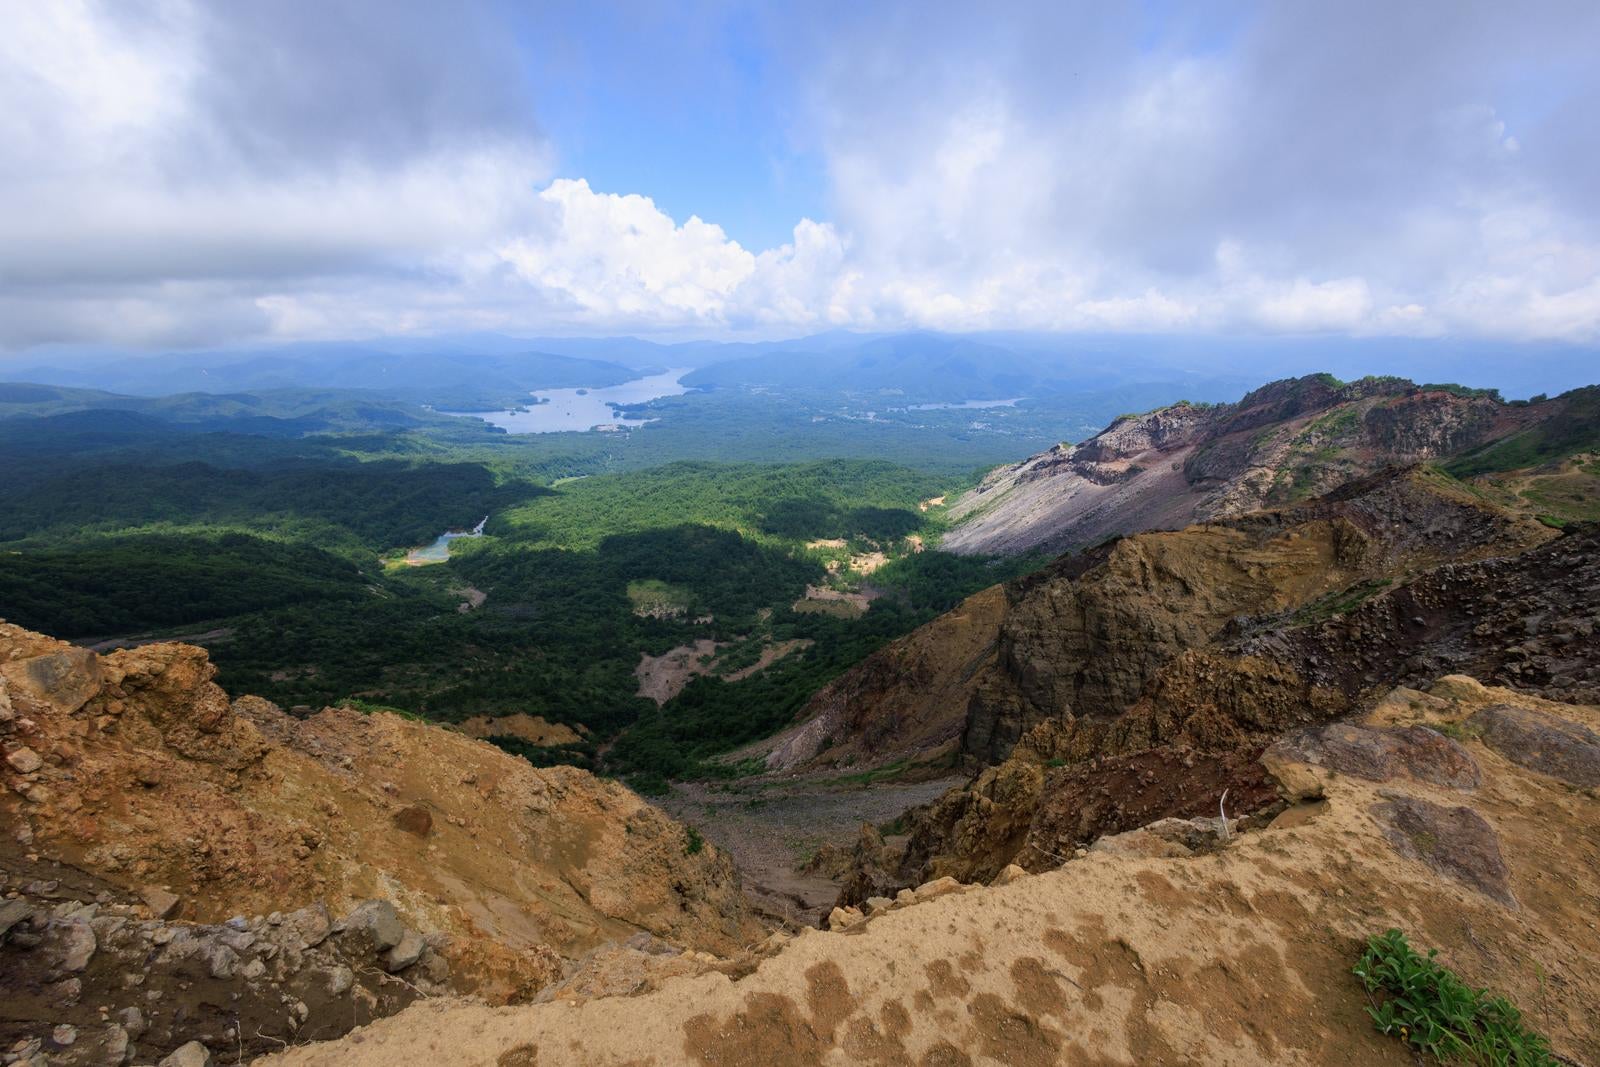 「猪苗代登山口の壮観な崖と山肌、磐梯山の景色を一望」の写真